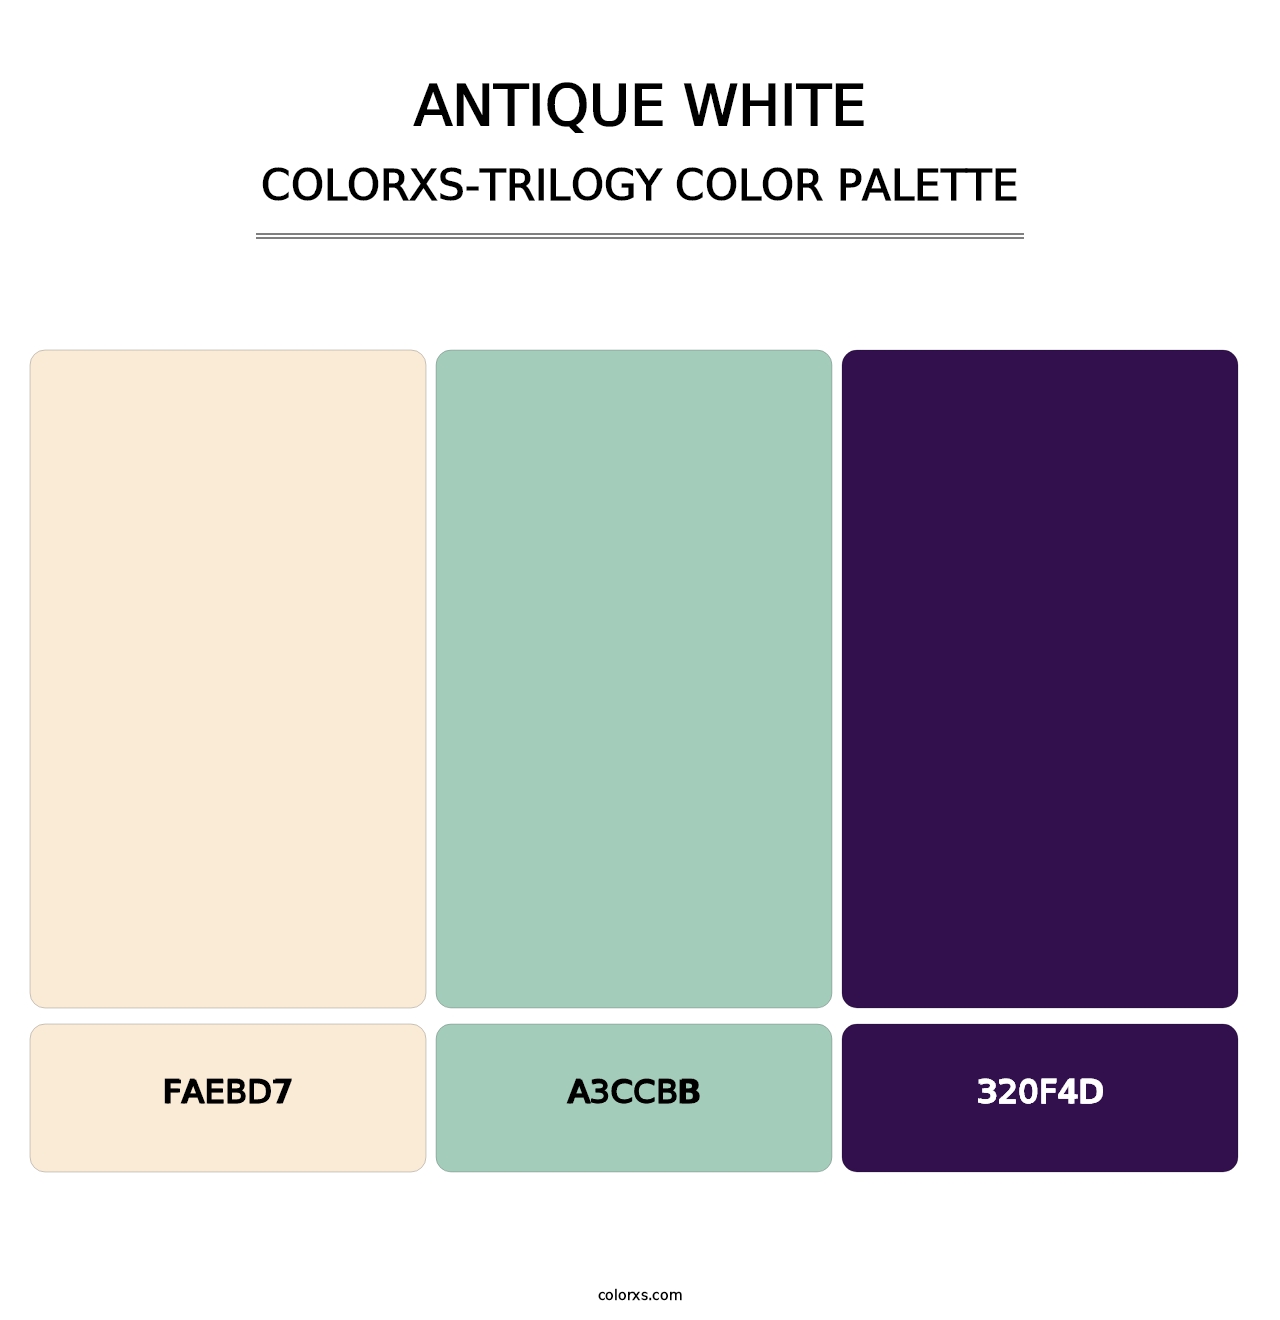 Antique White - Colorxs Trilogy Palette